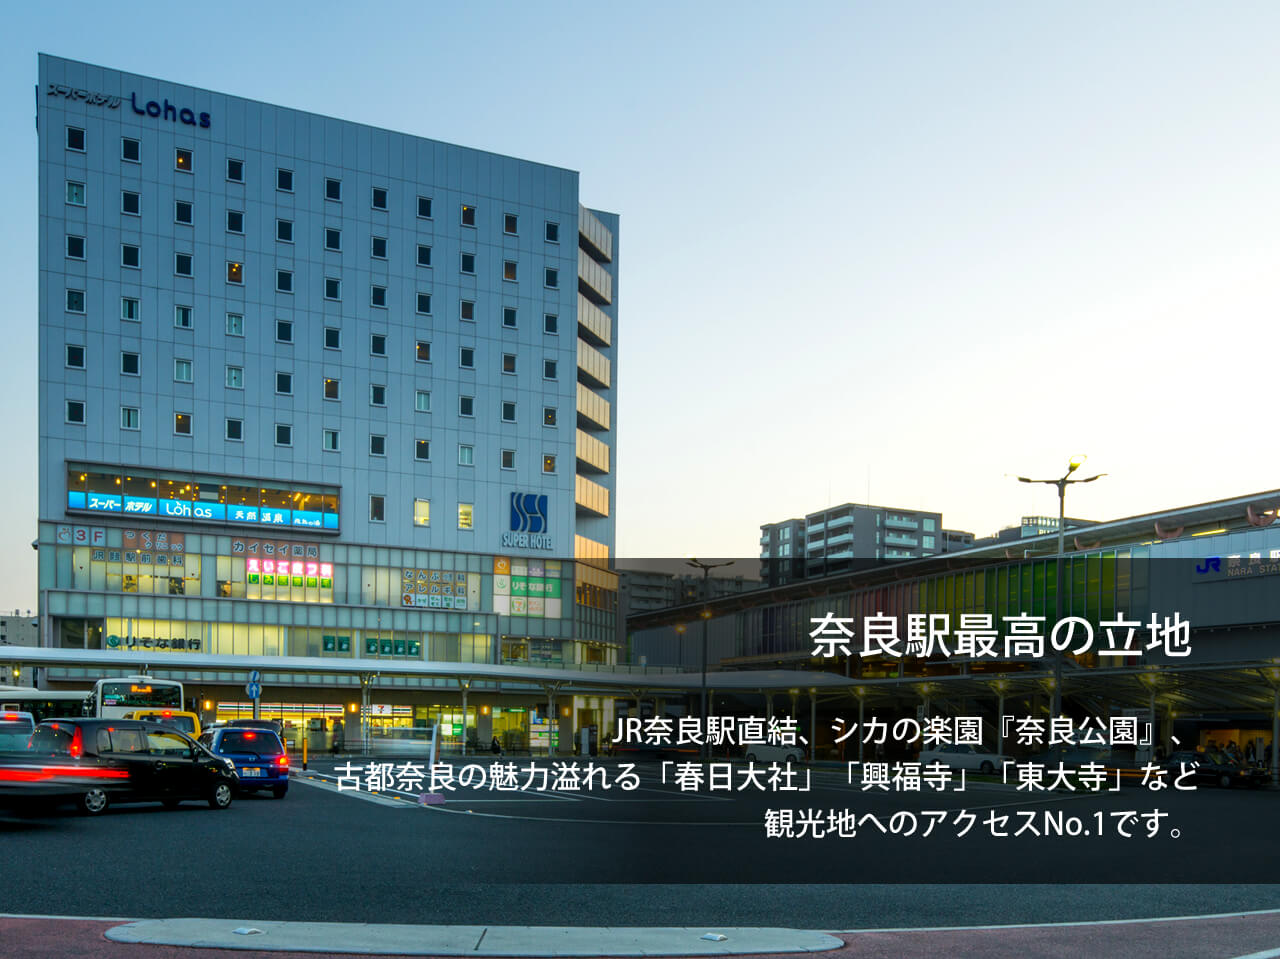 スーパーホテルLohasJR奈良駅